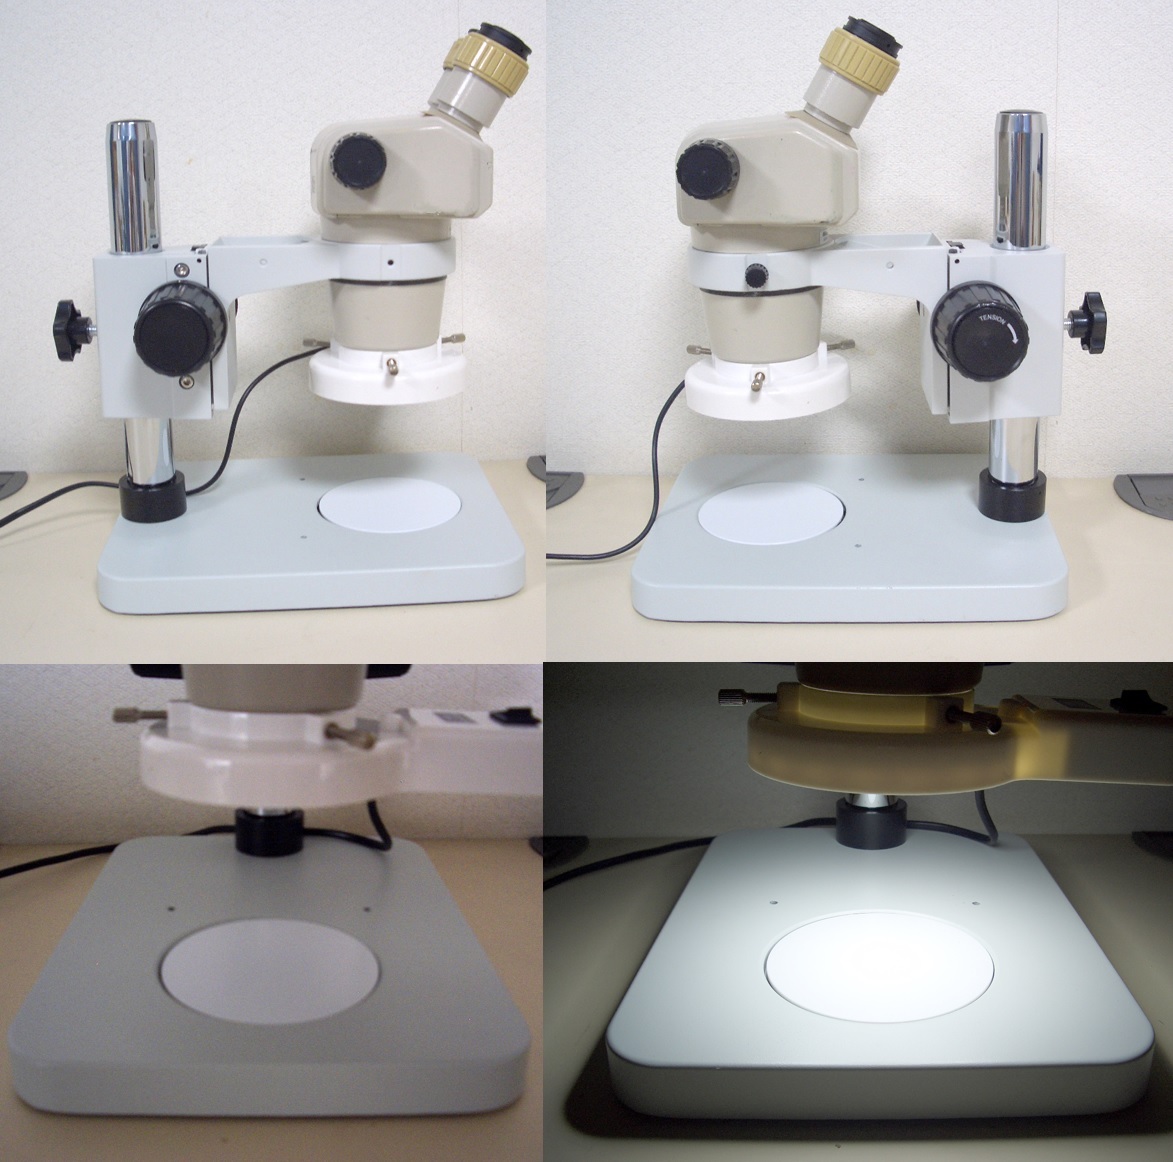 ニコン双眼実体顕微鏡 SMZ-1 美品 LED落射照明付 60倍まで明るく鮮明_画像4